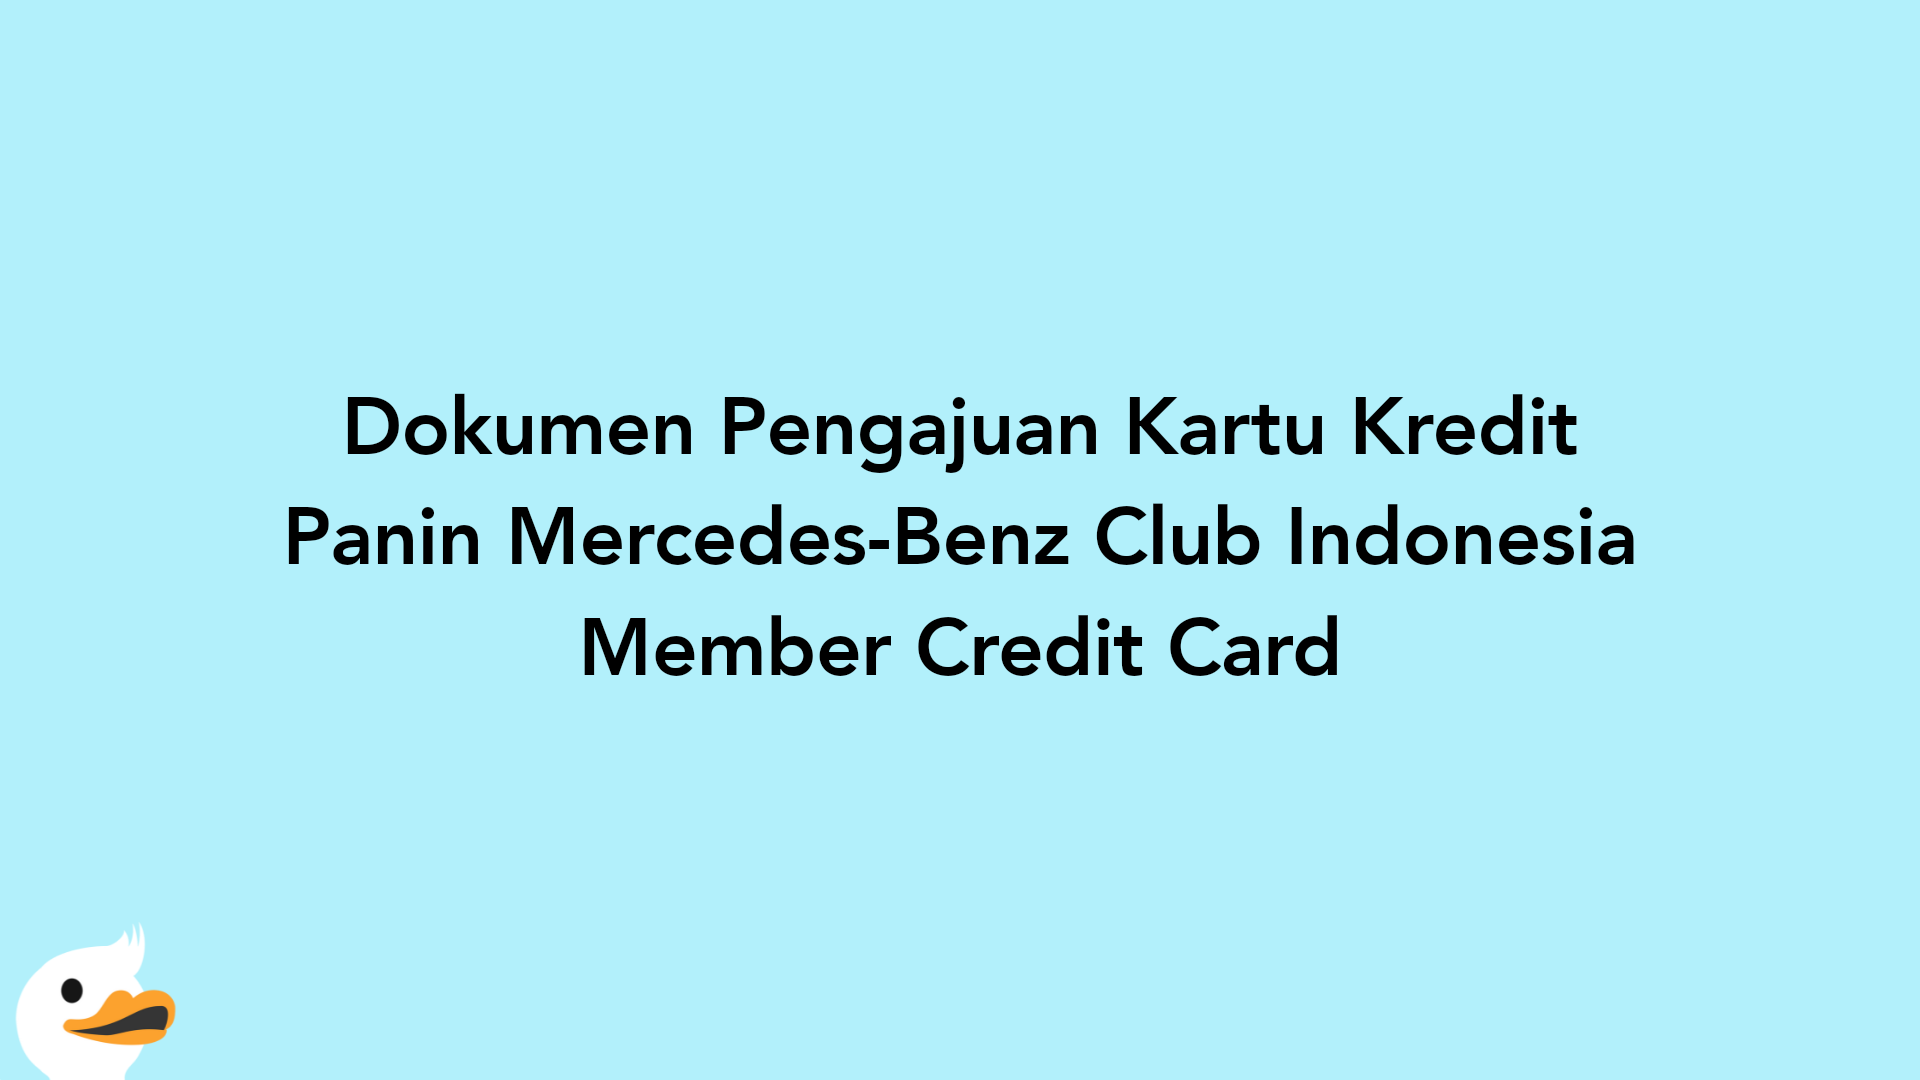 Dokumen Pengajuan Kartu Kredit Panin Mercedes-Benz Club Indonesia Member Credit Card